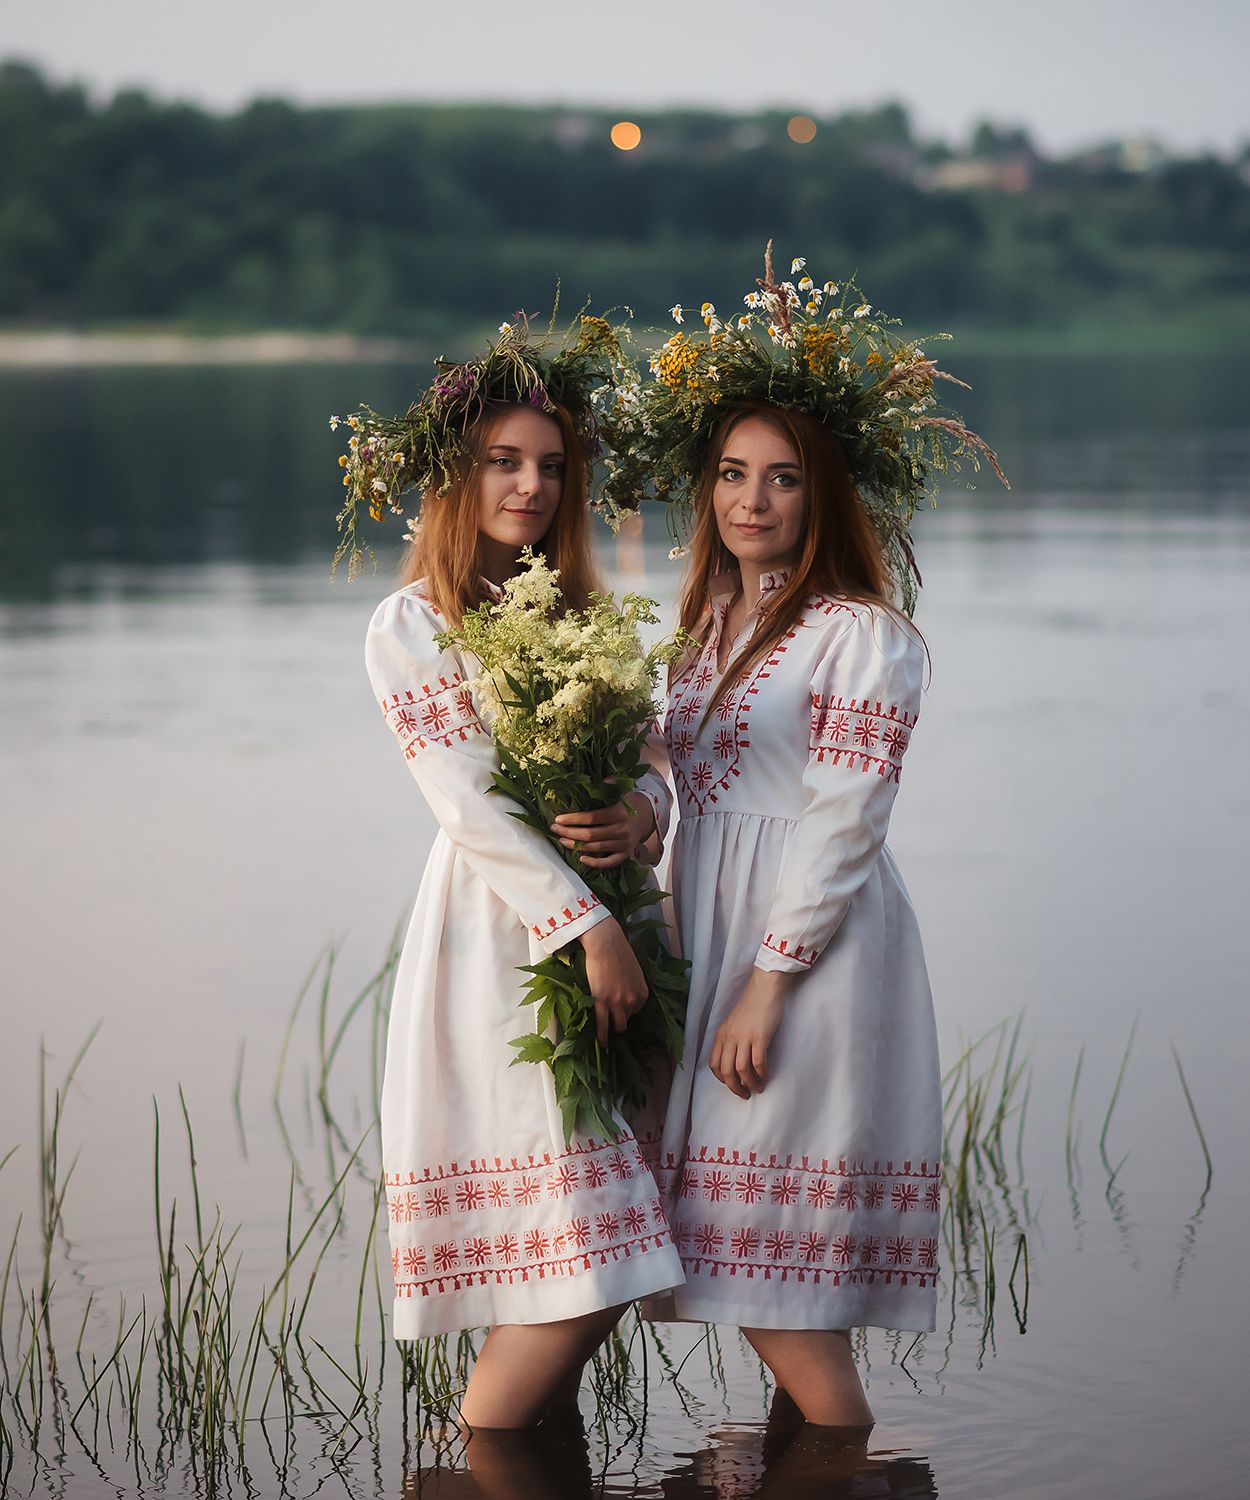 сестры девушки в белых платьях иван купала река волга венки из цветов славянские праздники, Сальников Евгений